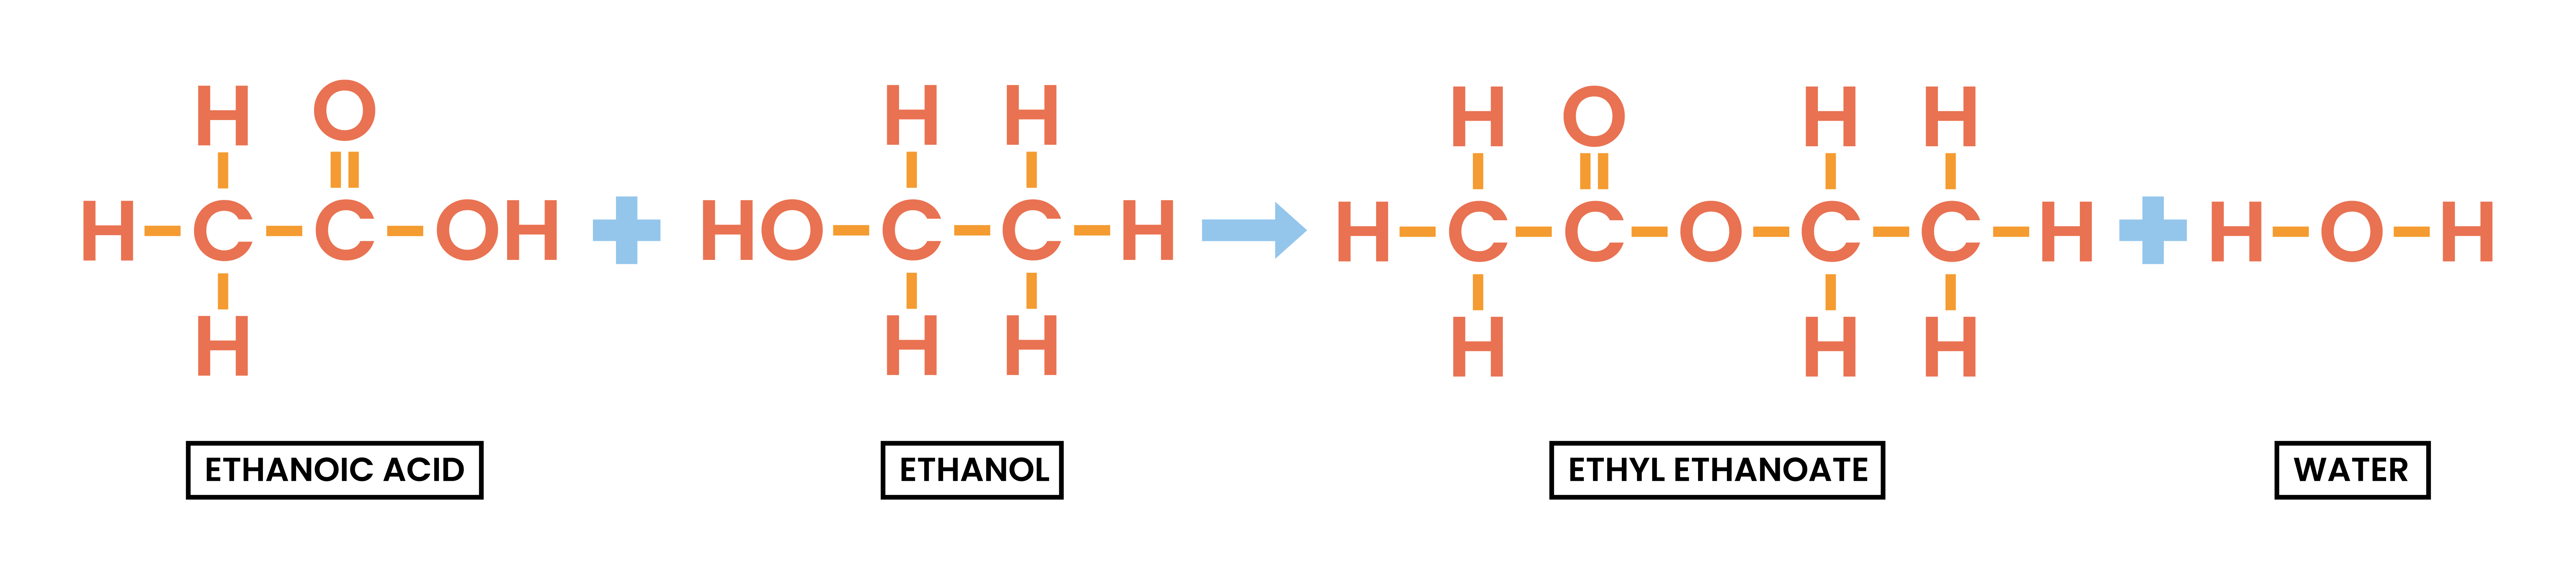 edexcel_igcse_chemistry_topic 27_esters_002_production of esters reaction formula